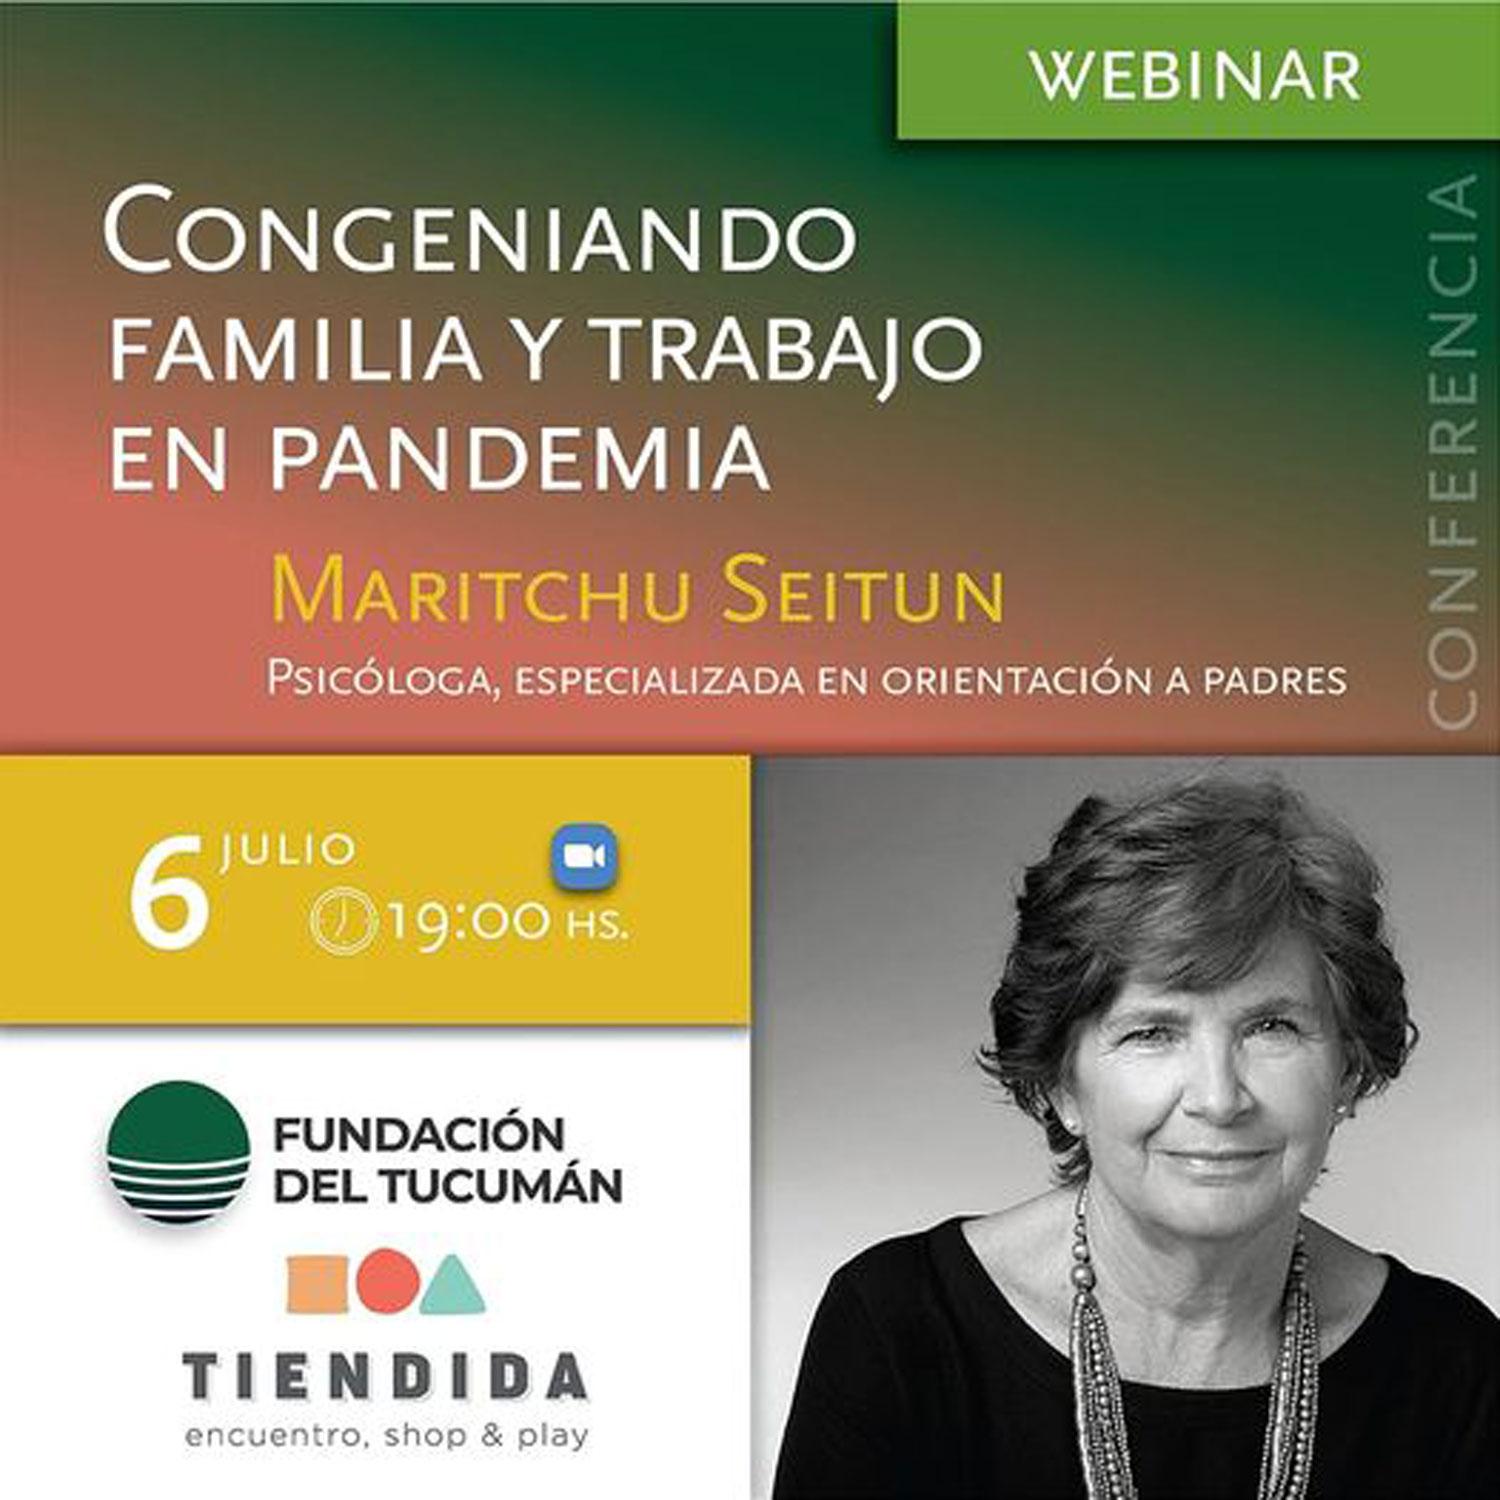 ¿Cómo congeniar familia y trabajo en pandemia? Inscribite en este Webinar de la Fundación del Tucumán